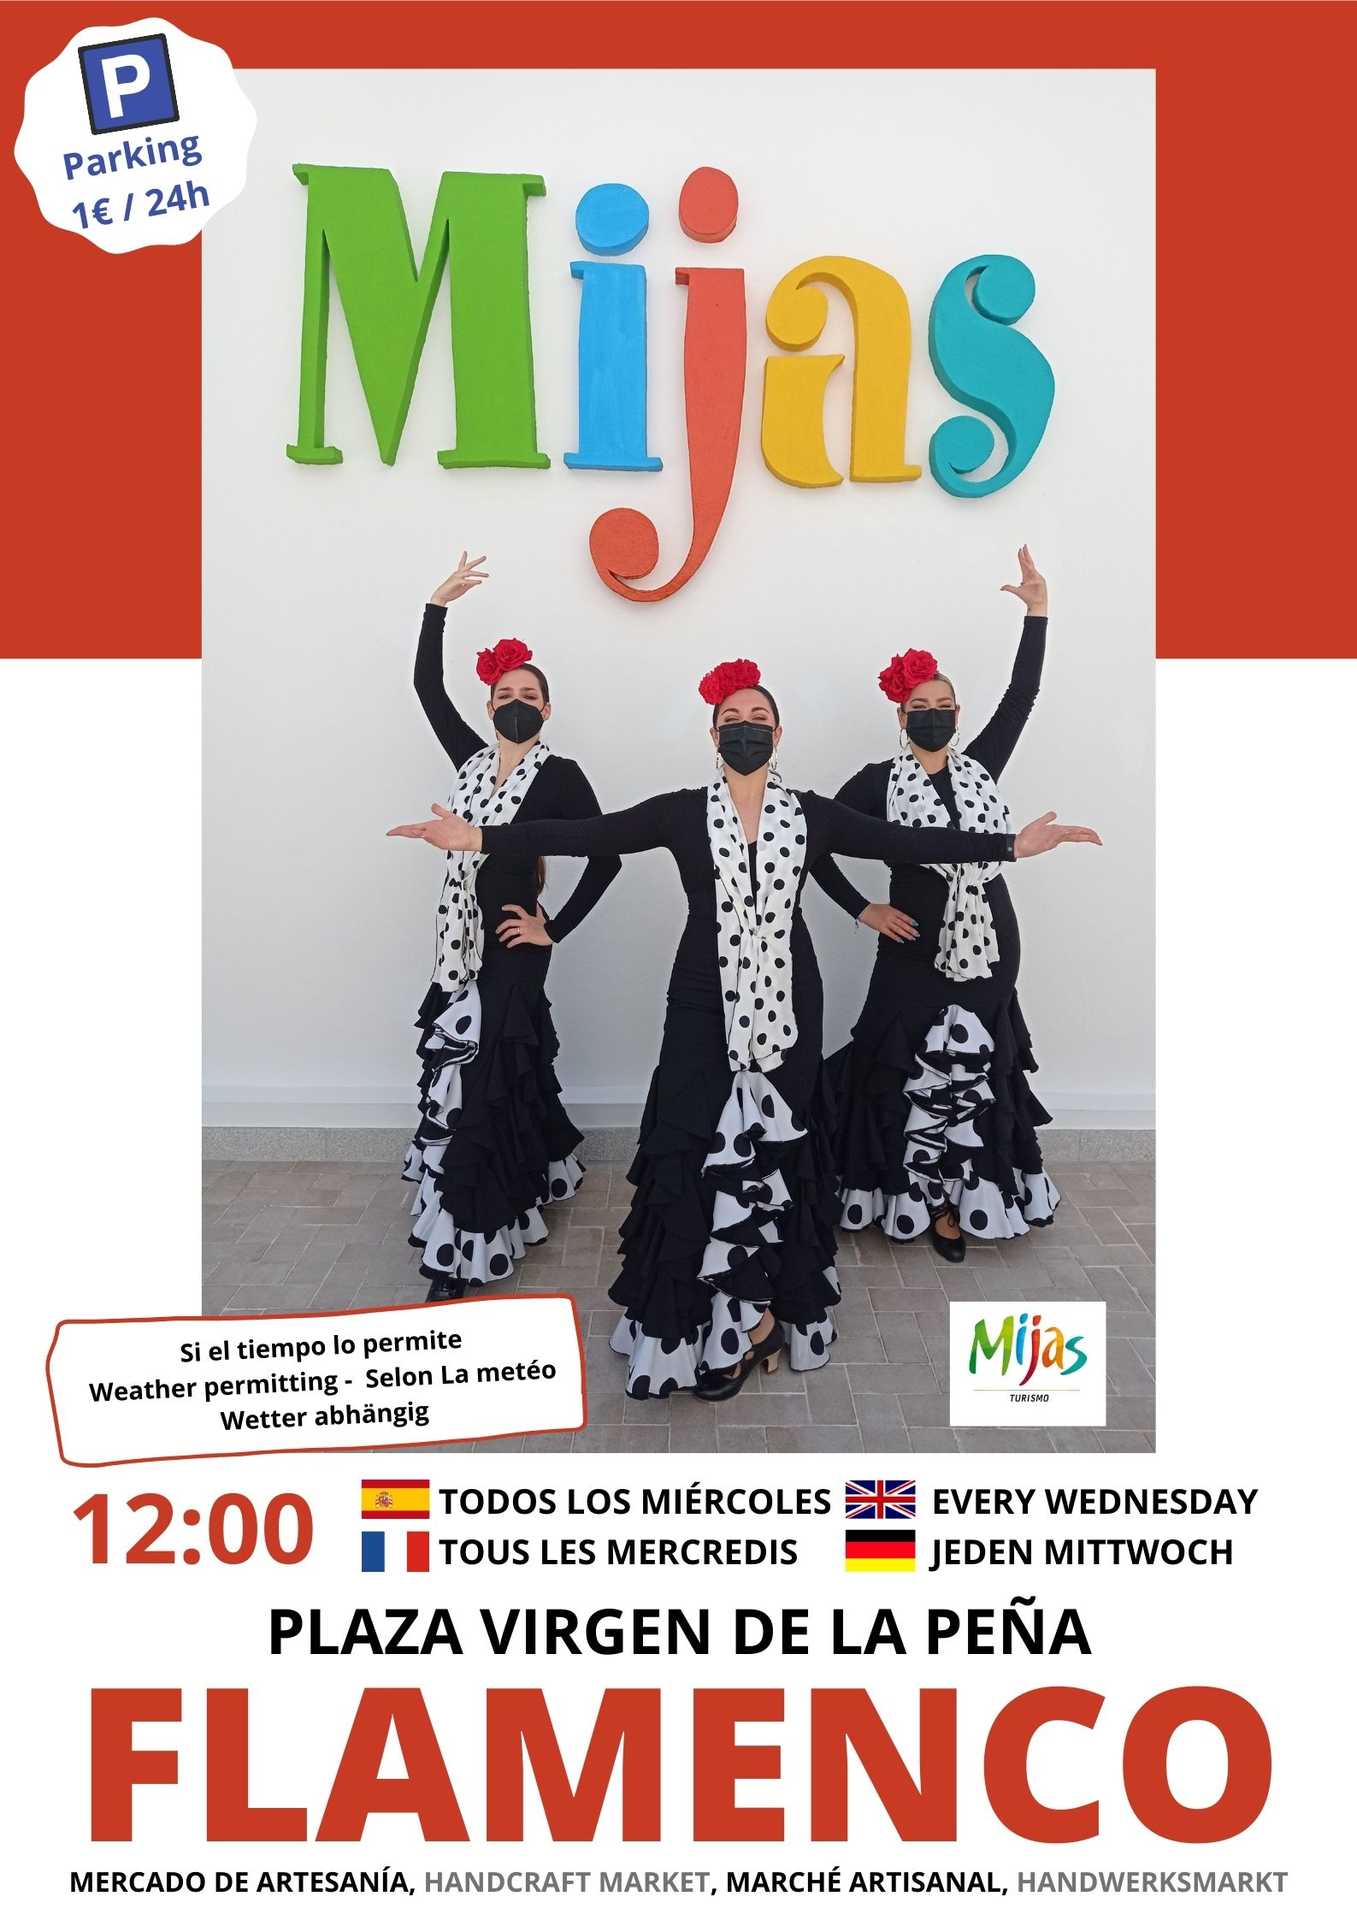 Espectáculo de Flamenco en Mijas y Mercado Artesanal